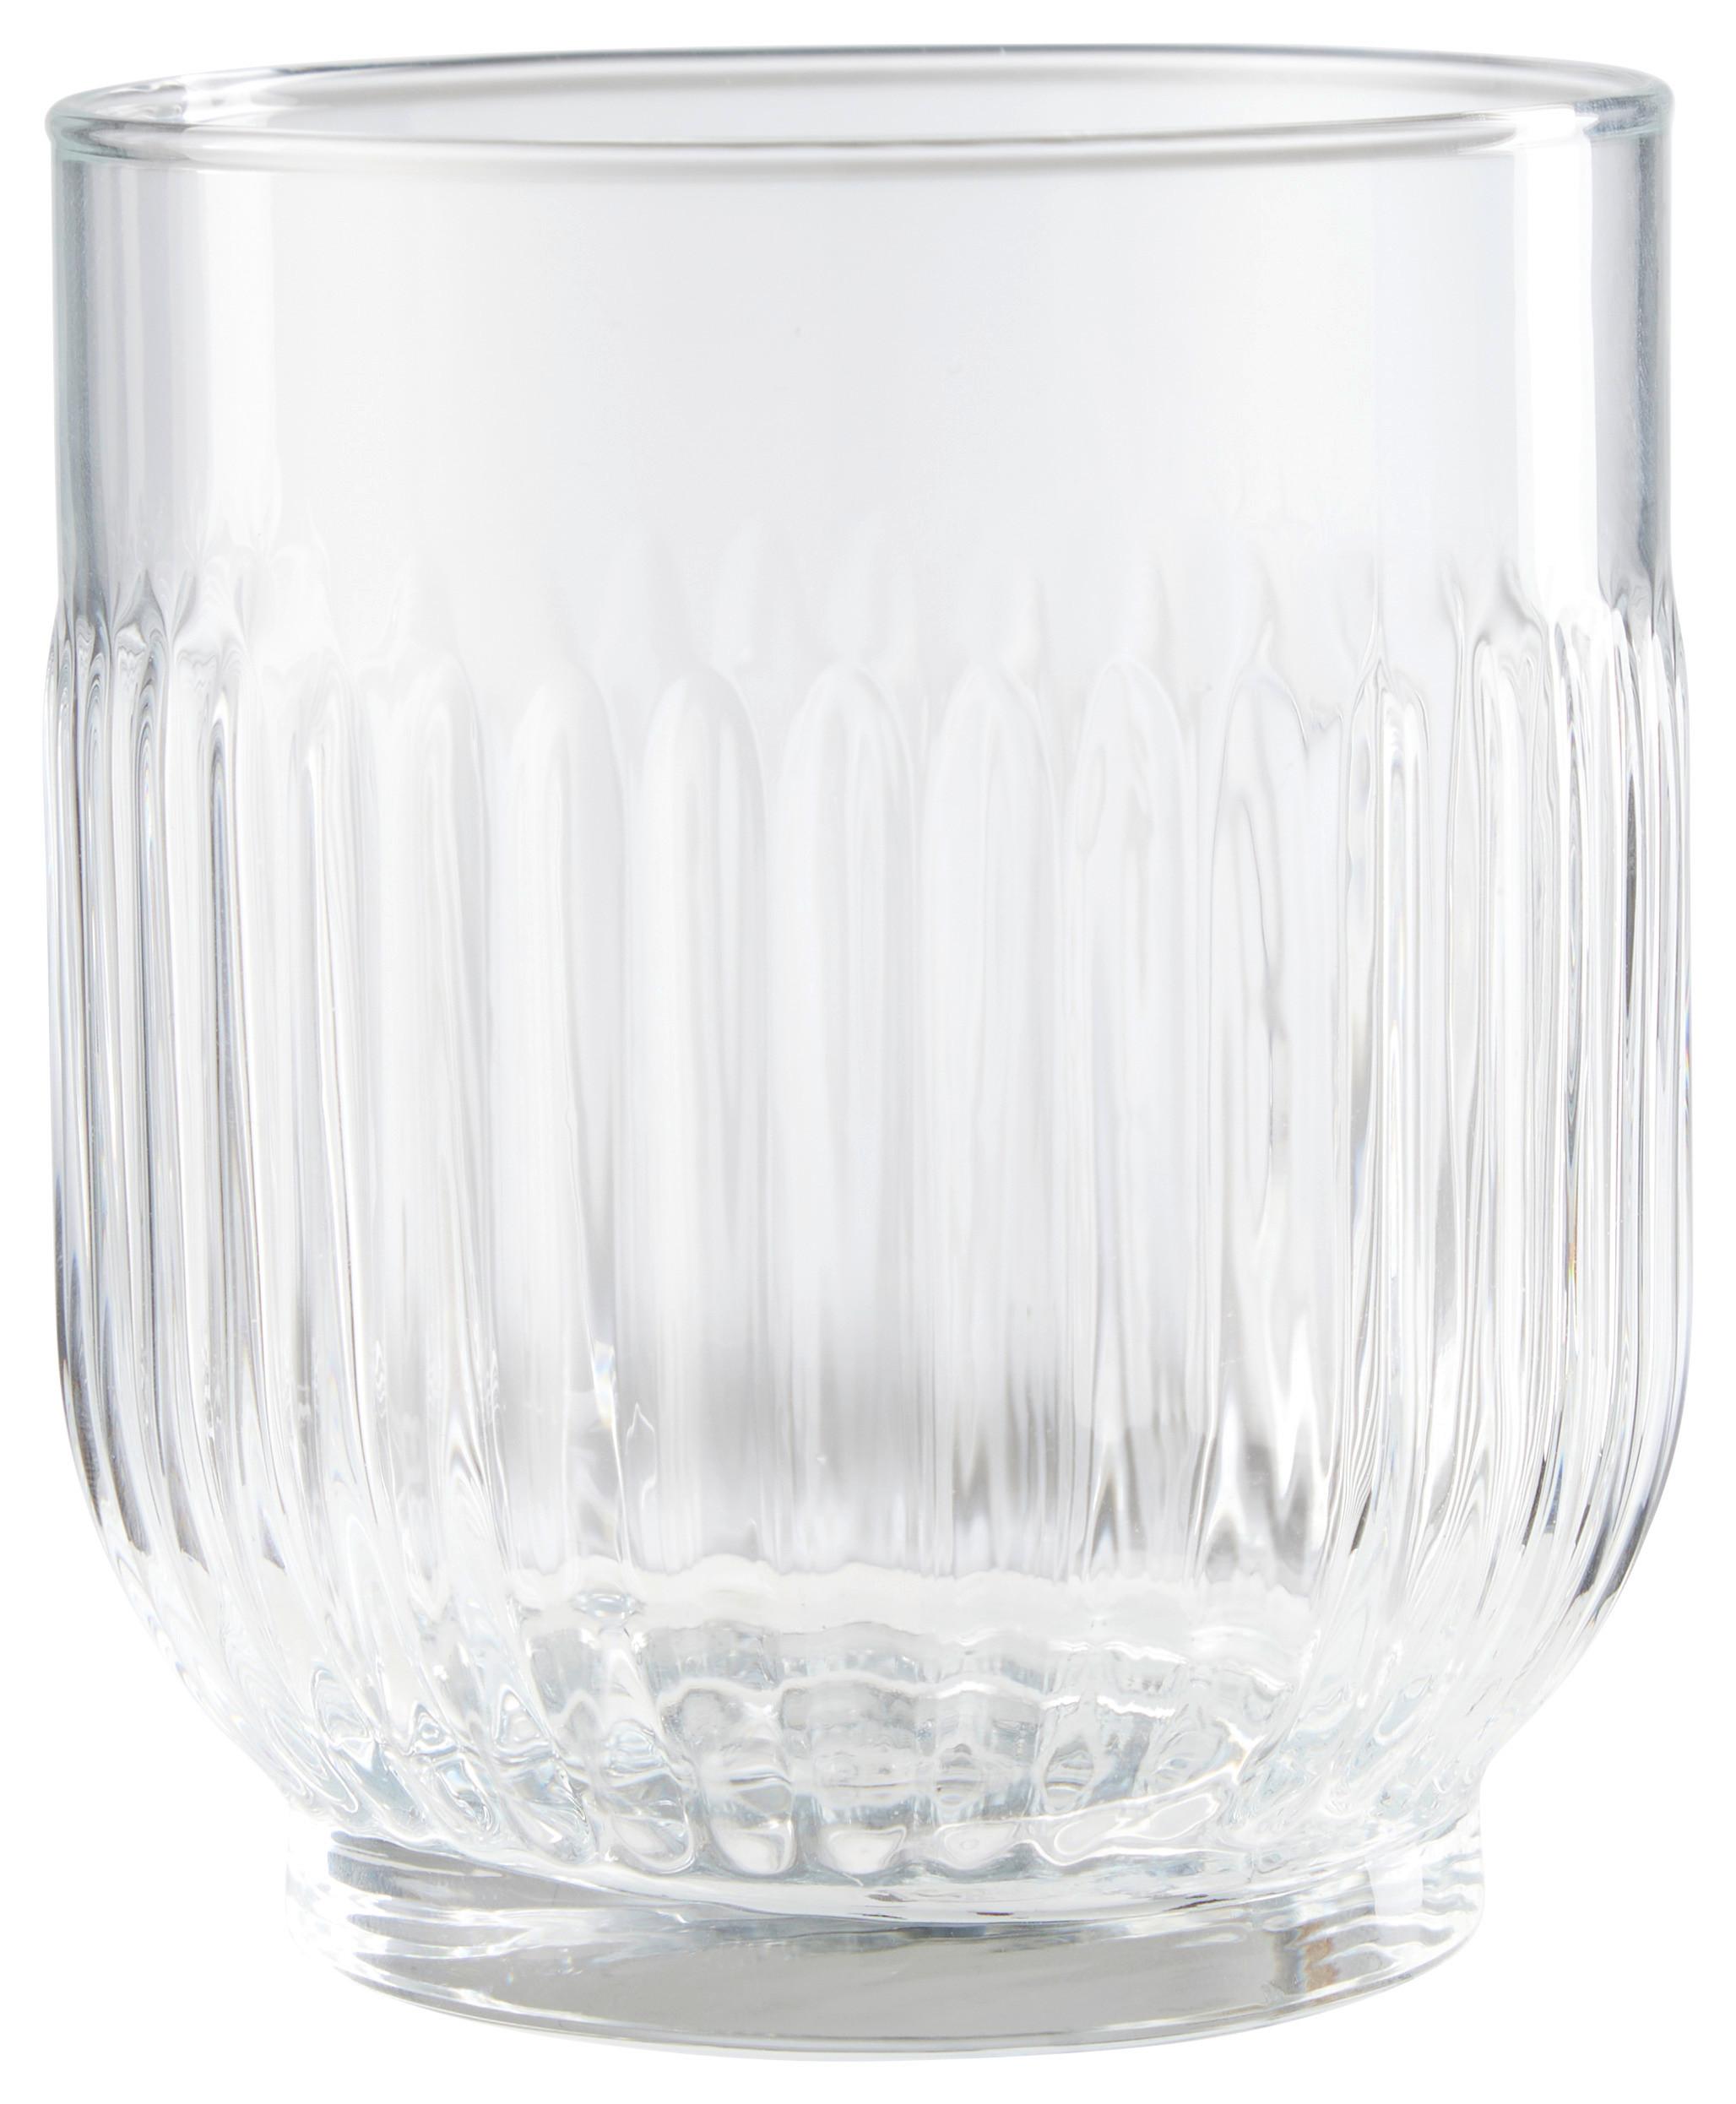 Pohár Na Whisky Skye, 330ml - číra, Konvenčný, sklo (7,9/9cm) - Modern Living